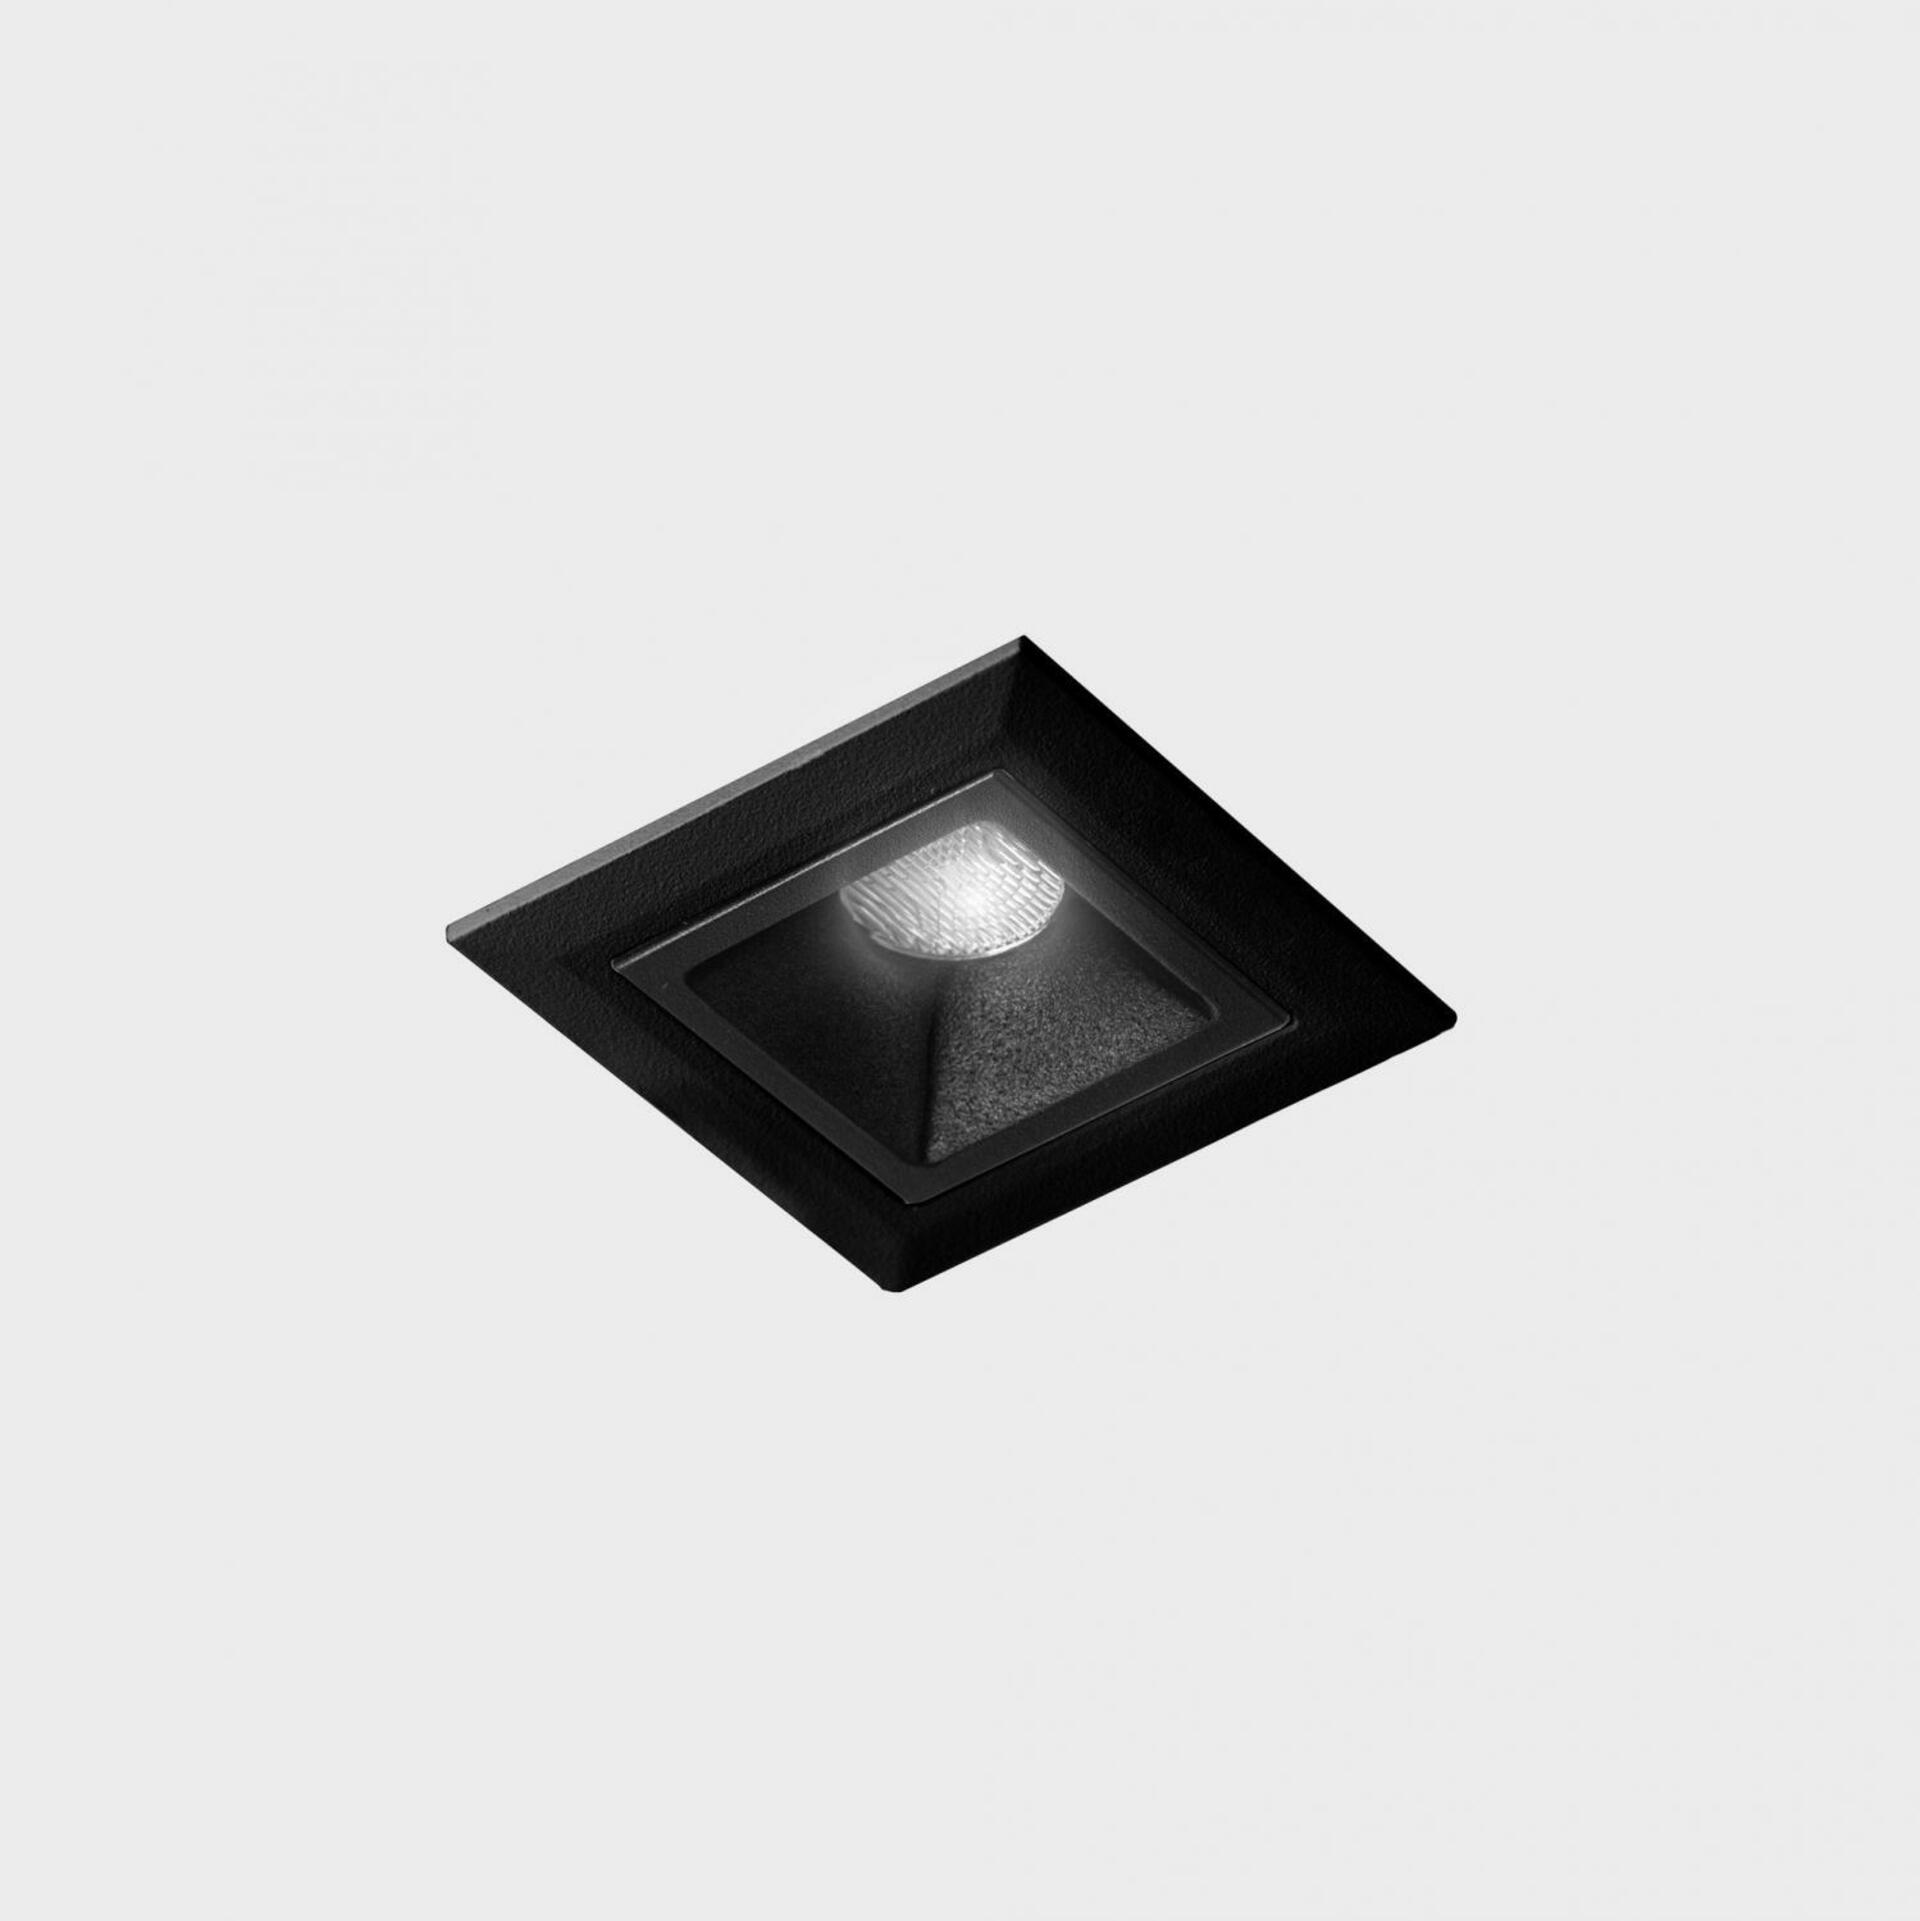 KOHL LIGHTING KOHL-Lighting NSES zapuštěné svítidlo s rámečkem 45x45 mm černá 2 W CRI 90 3000K PUSH